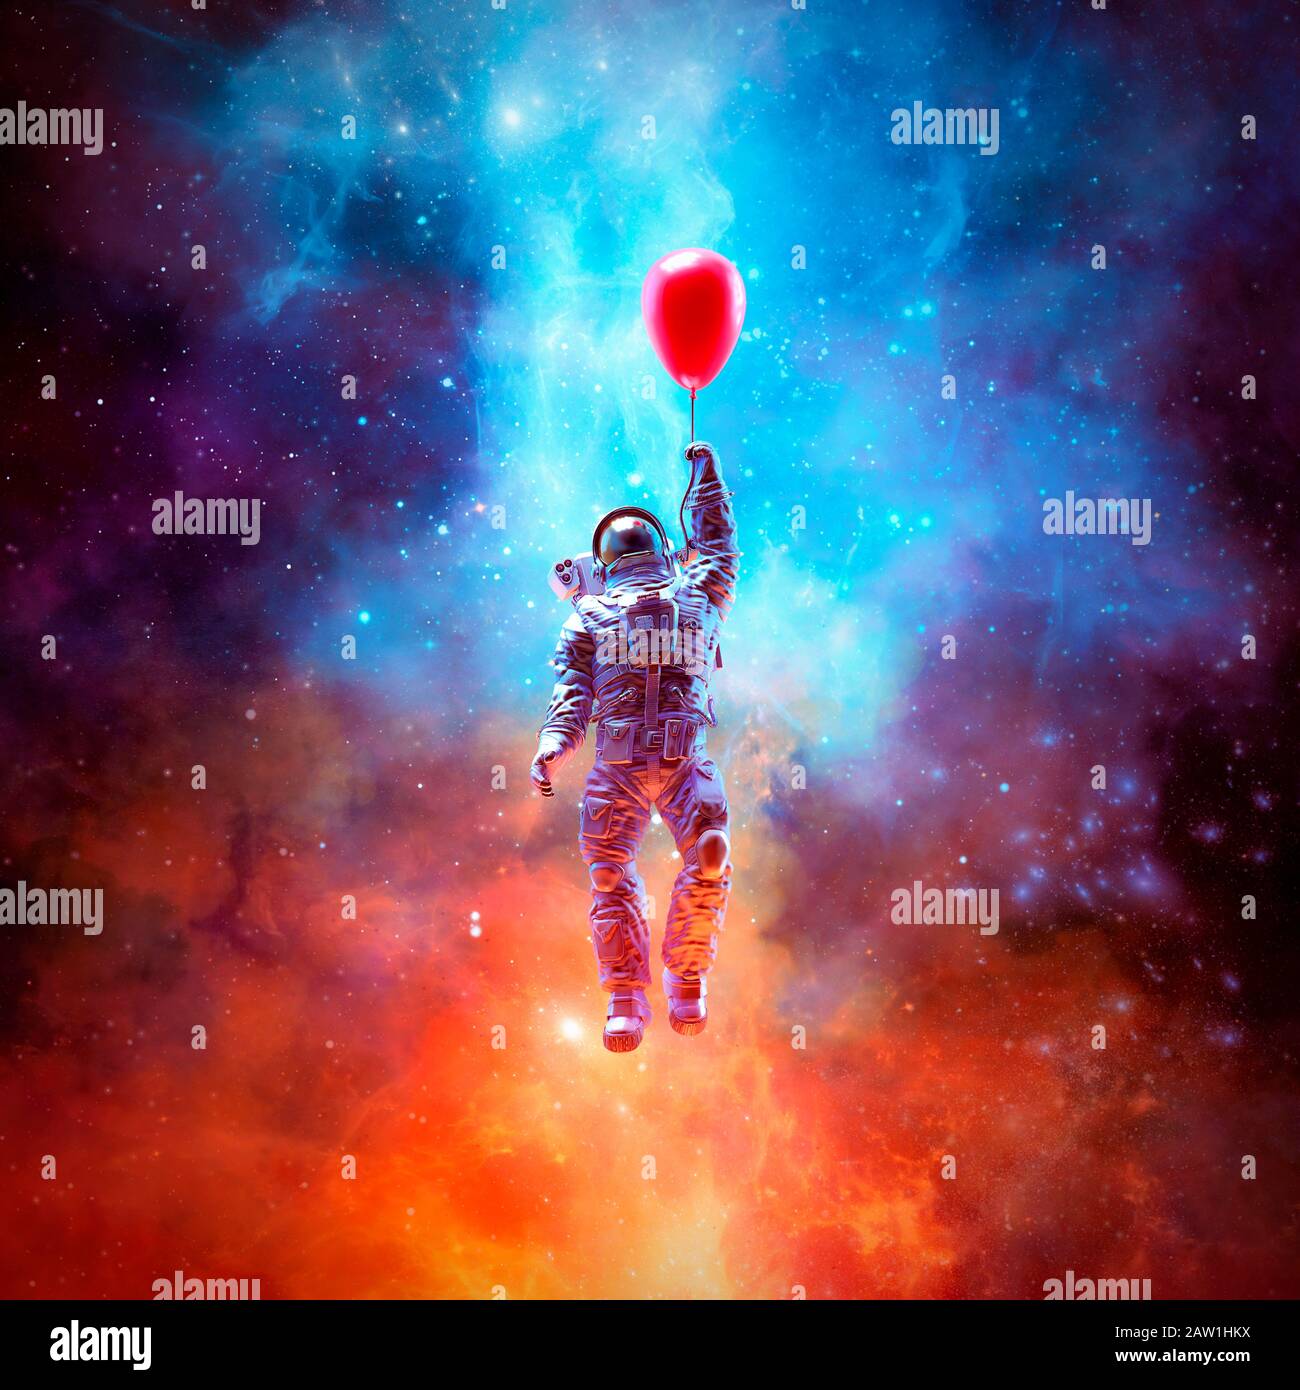 Rêve d'évasion / illustration tridimensionnelle de la scène de science-fiction surréelle avec l'astronaute flottant dans l'espace à l'aide de montgolfière rouge Banque D'Images